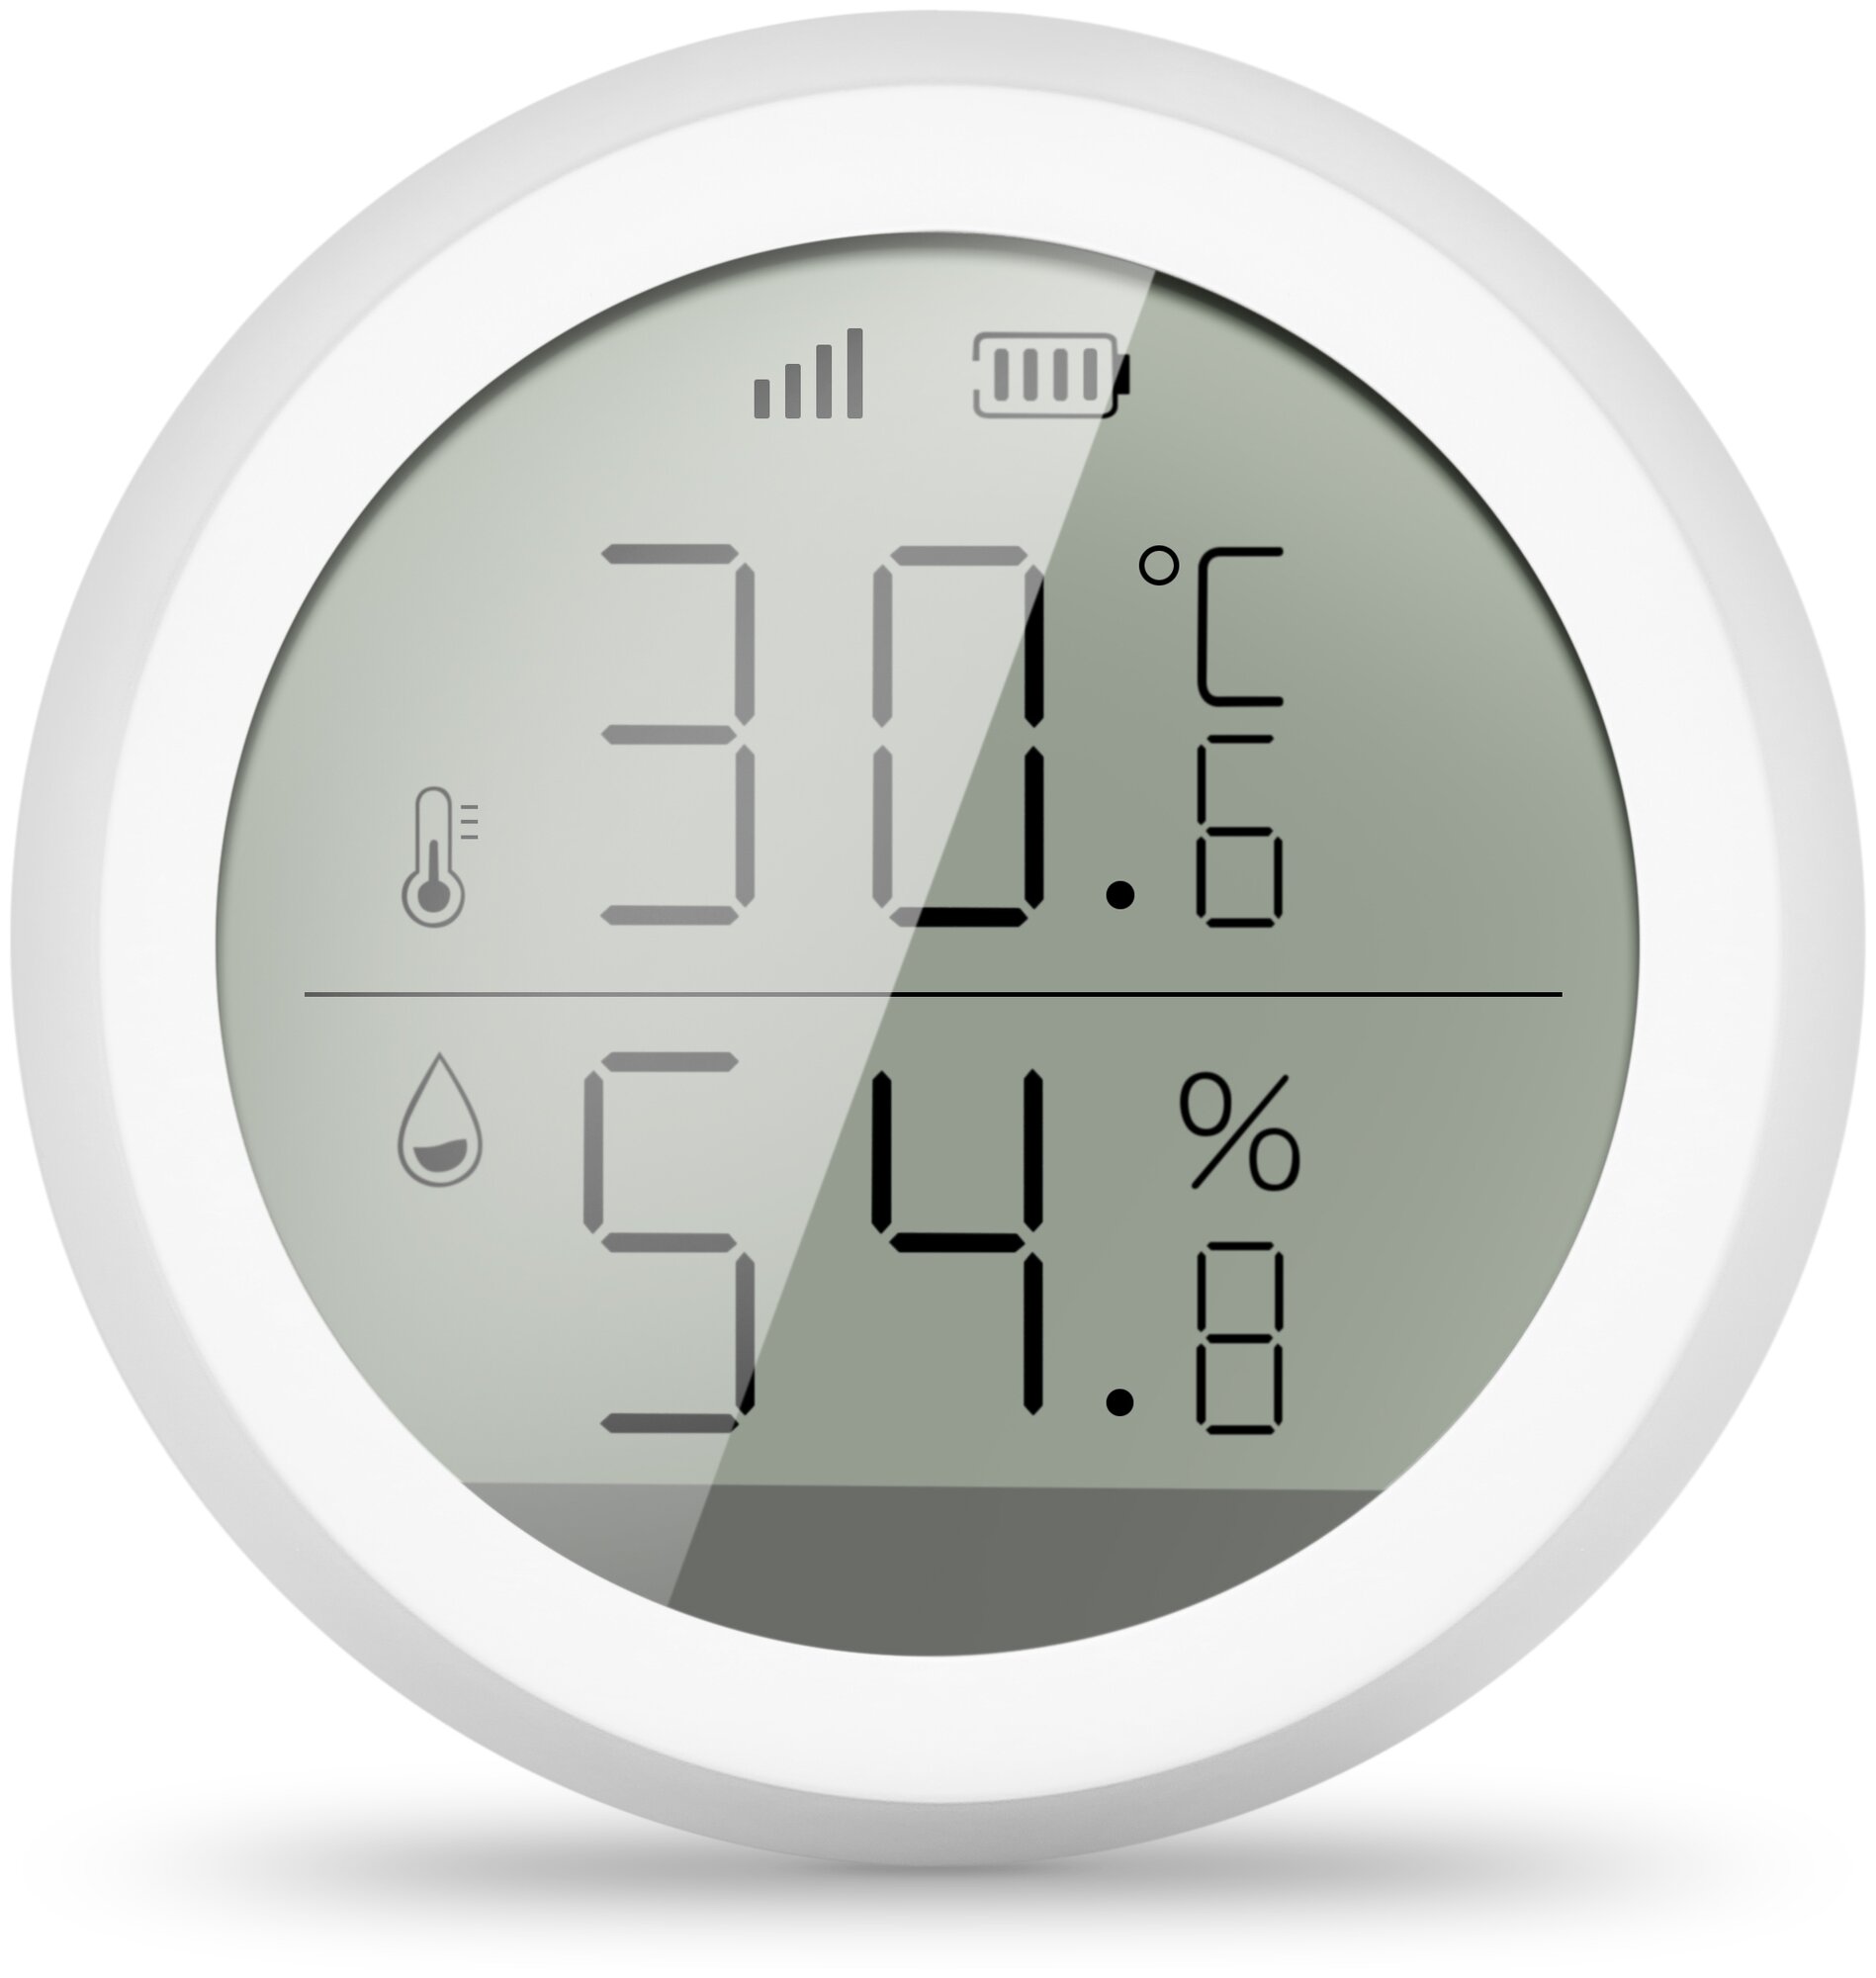 Комнатный датчик температуры и влажности Tuya TS0201 с LCD дисплеем